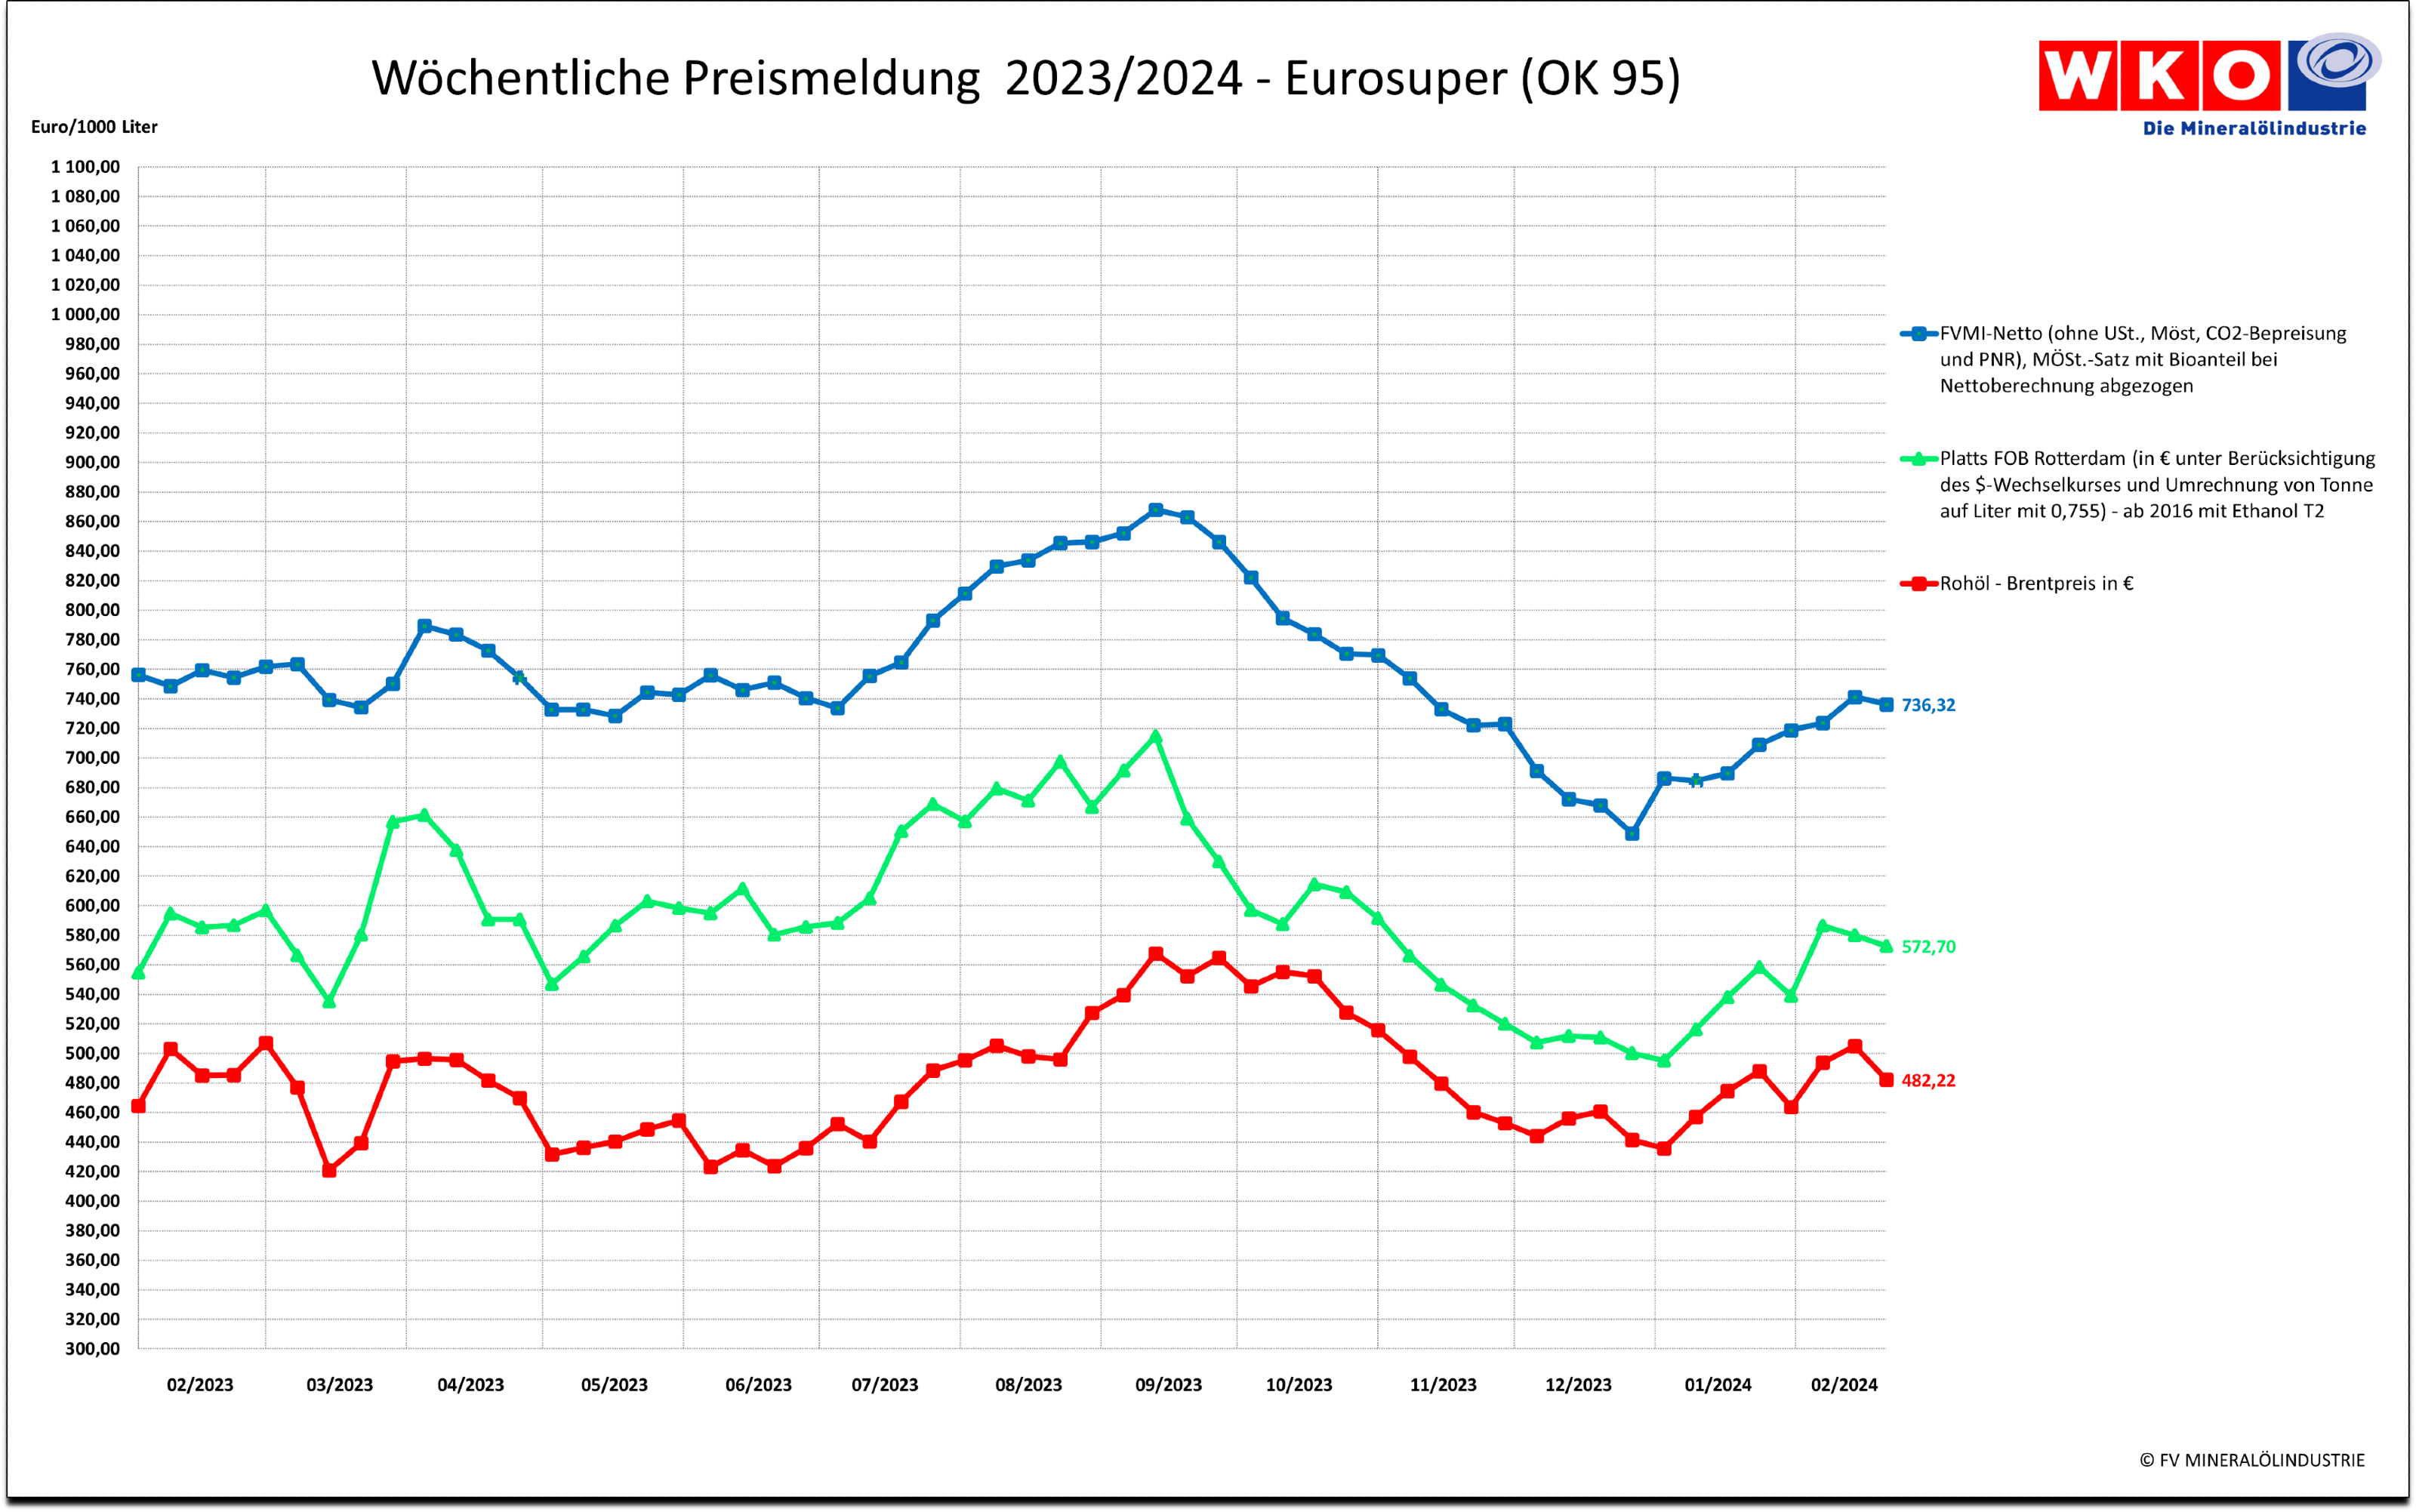 Wöchentliche Entwicklung der Preise für Eurosuper im Vergleichszeitraum 2022-2023